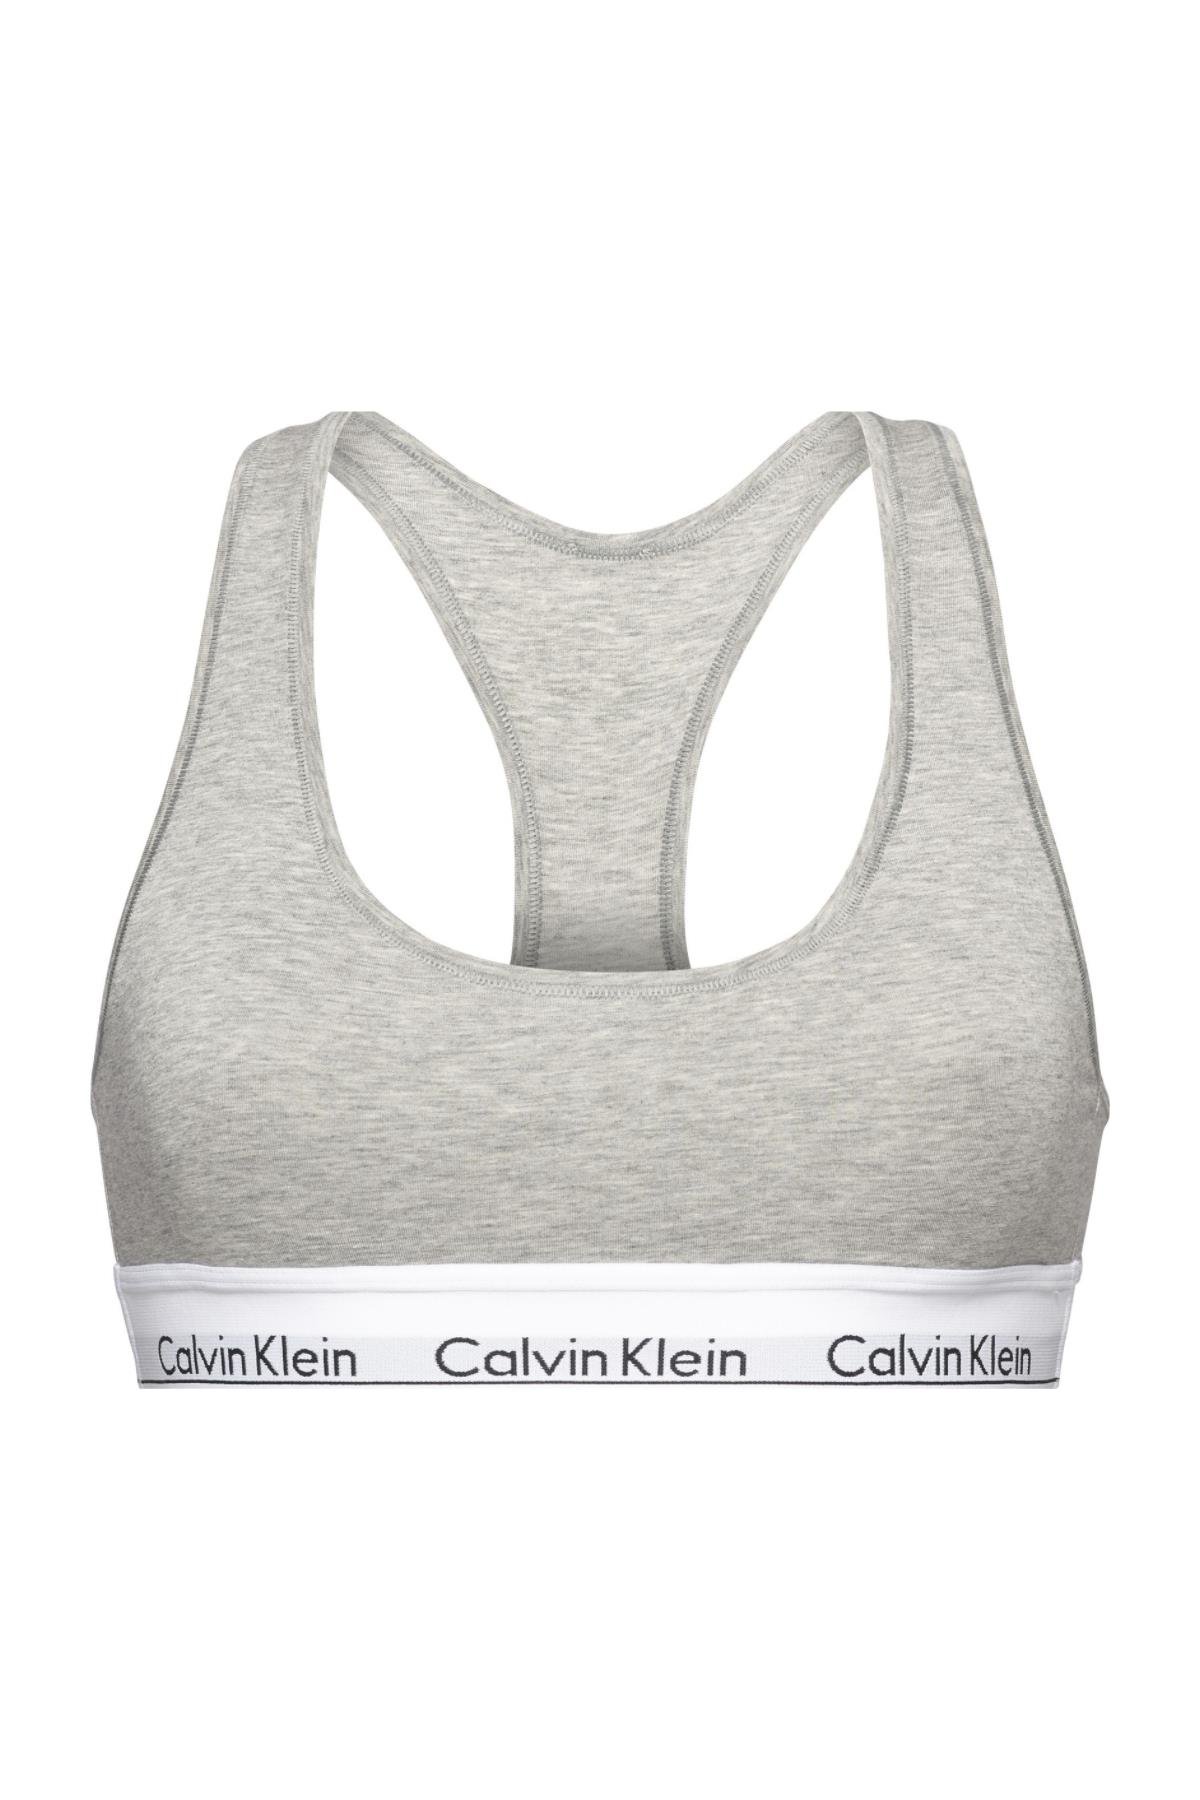 Calvin Klein Bralette | F3785E020 | kuzeybrands.com